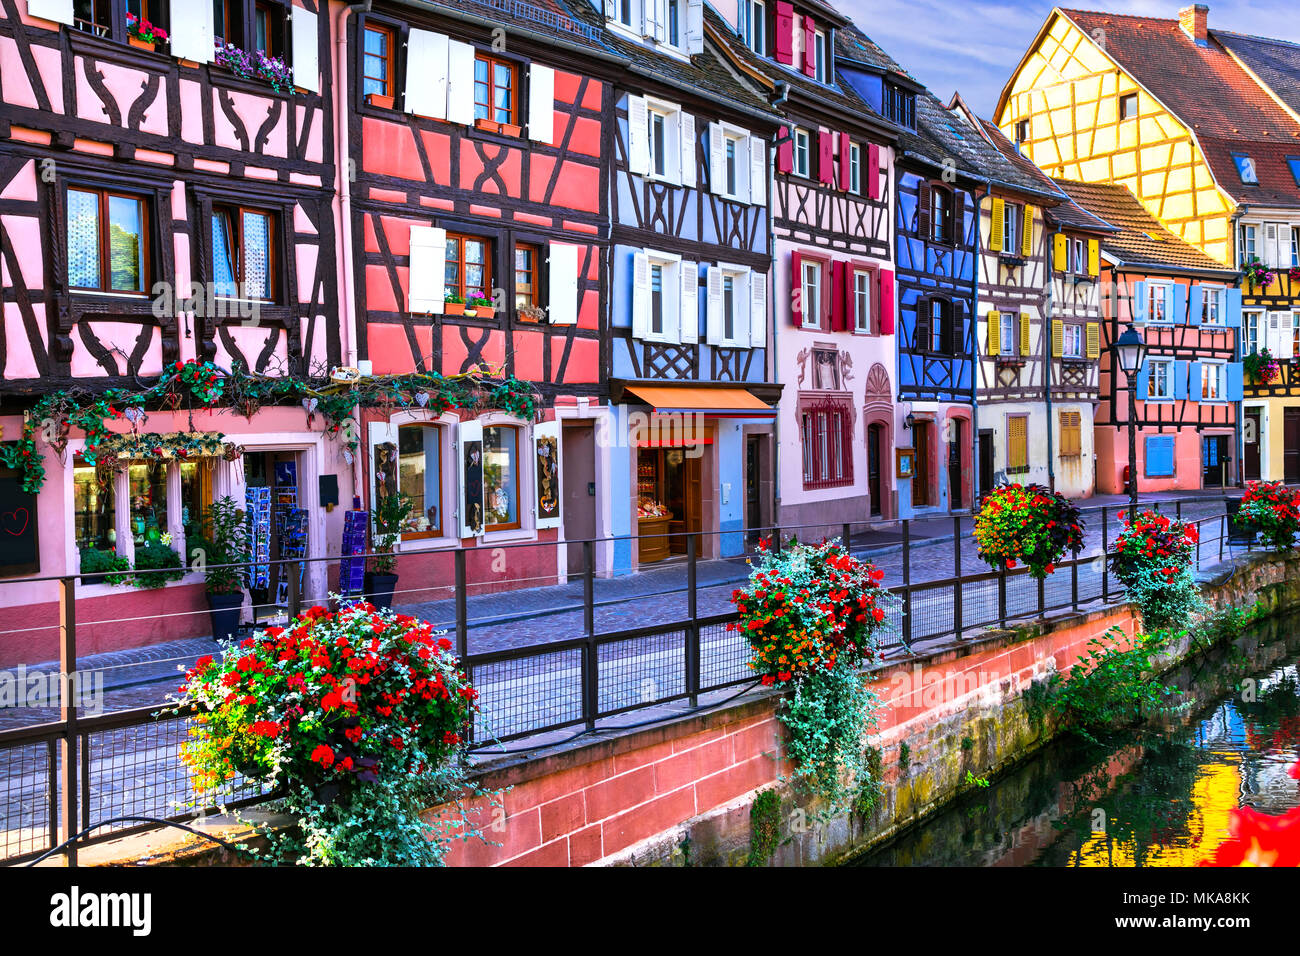 Charakteristisch bunten Häuser in der Stadt Colmar, Elsass, Frankreich. Stockfoto